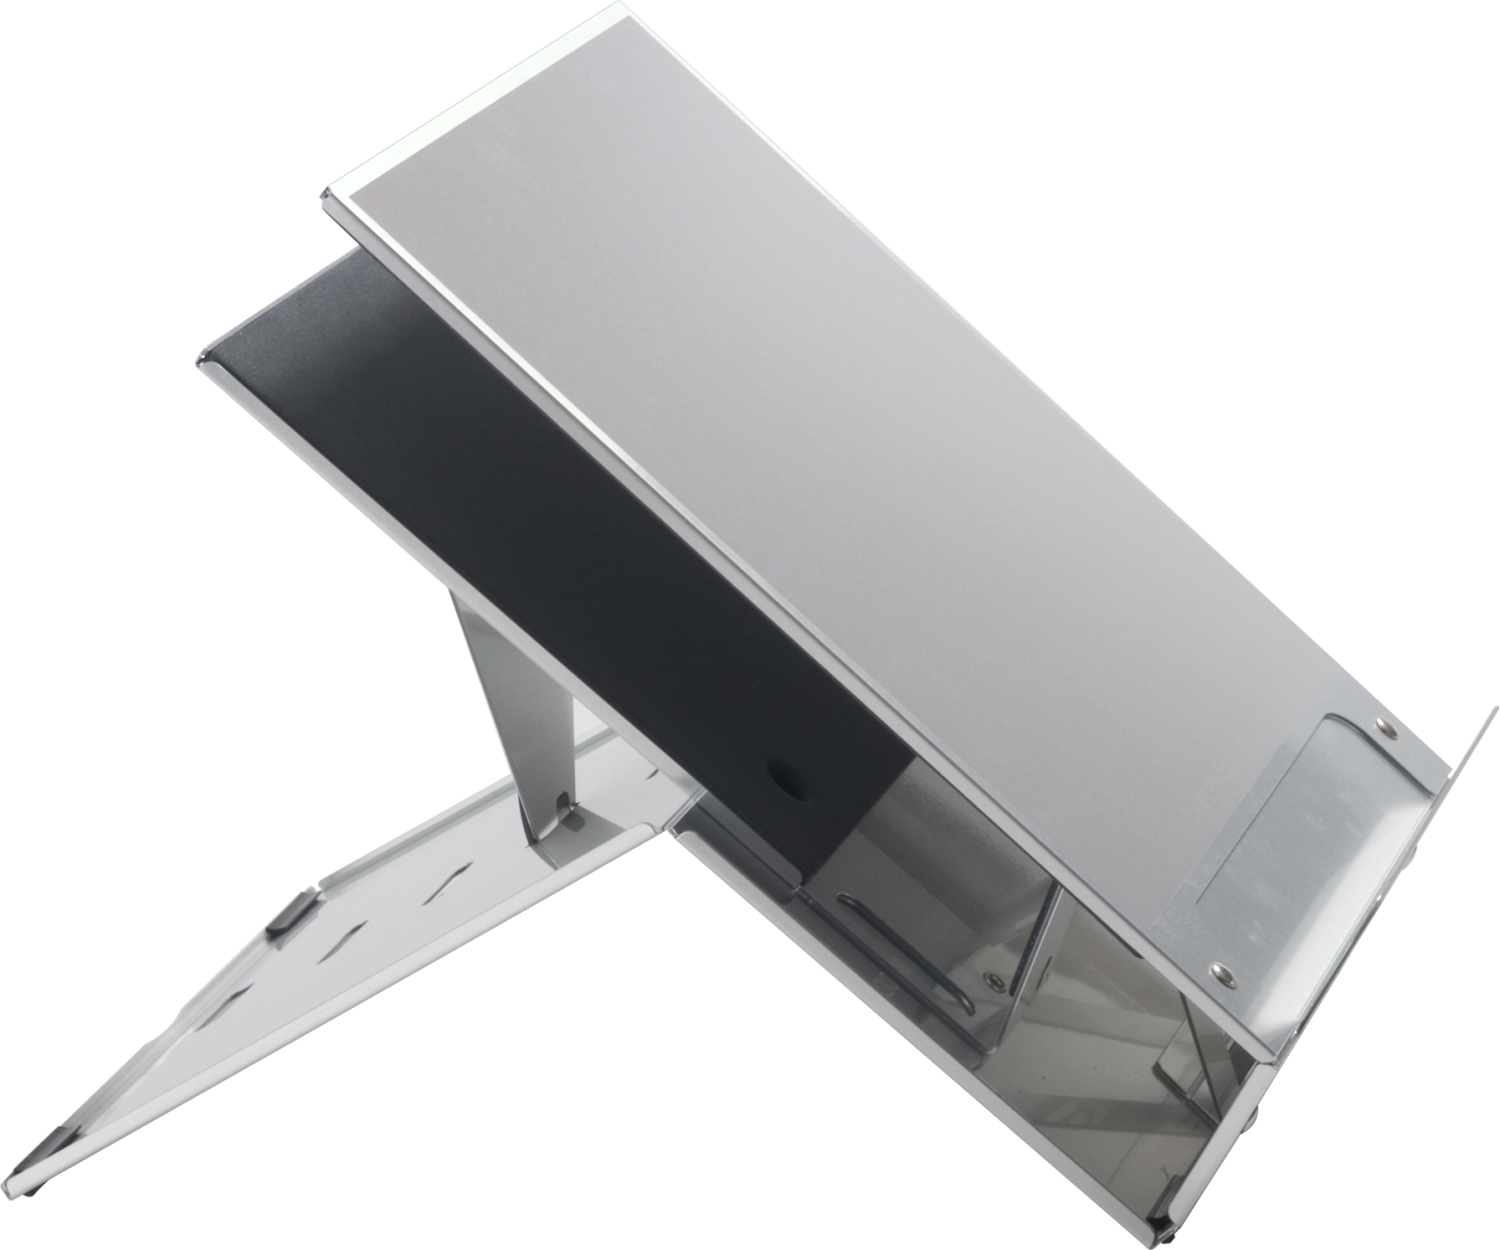  BAKBNEQ260  Support pour ordinateur portable ultra-portable  Ergo-Q - Légèrement compact